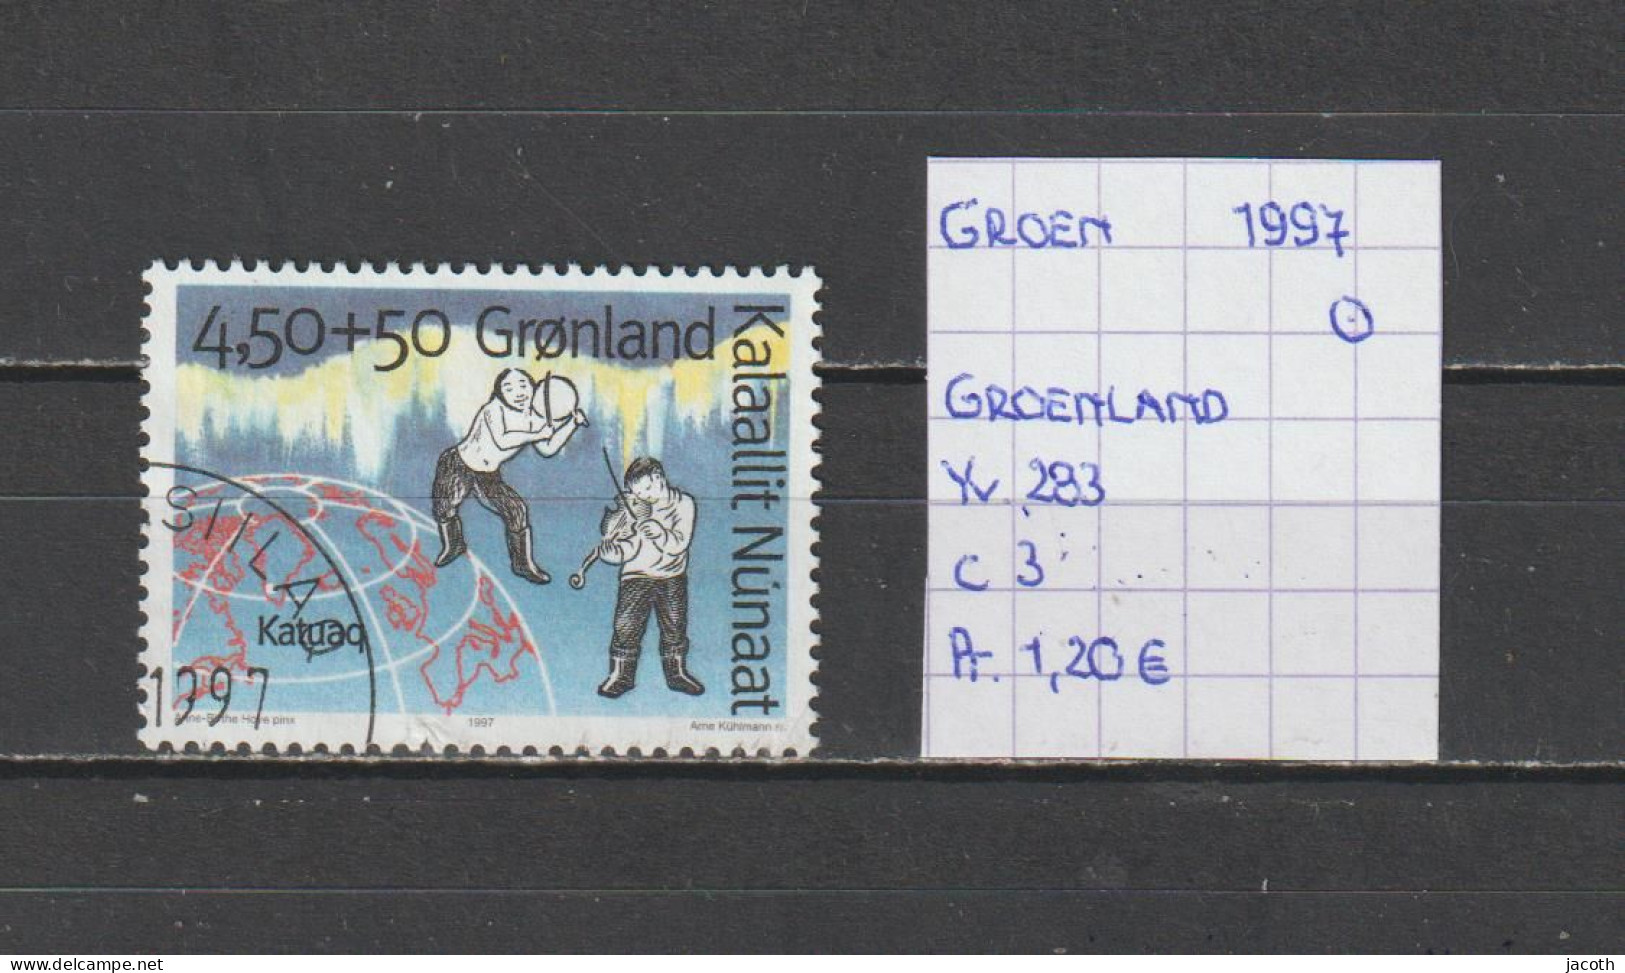 (TJ) Groenland 1997 - YT 283 (gest./obl./used) - Gebraucht